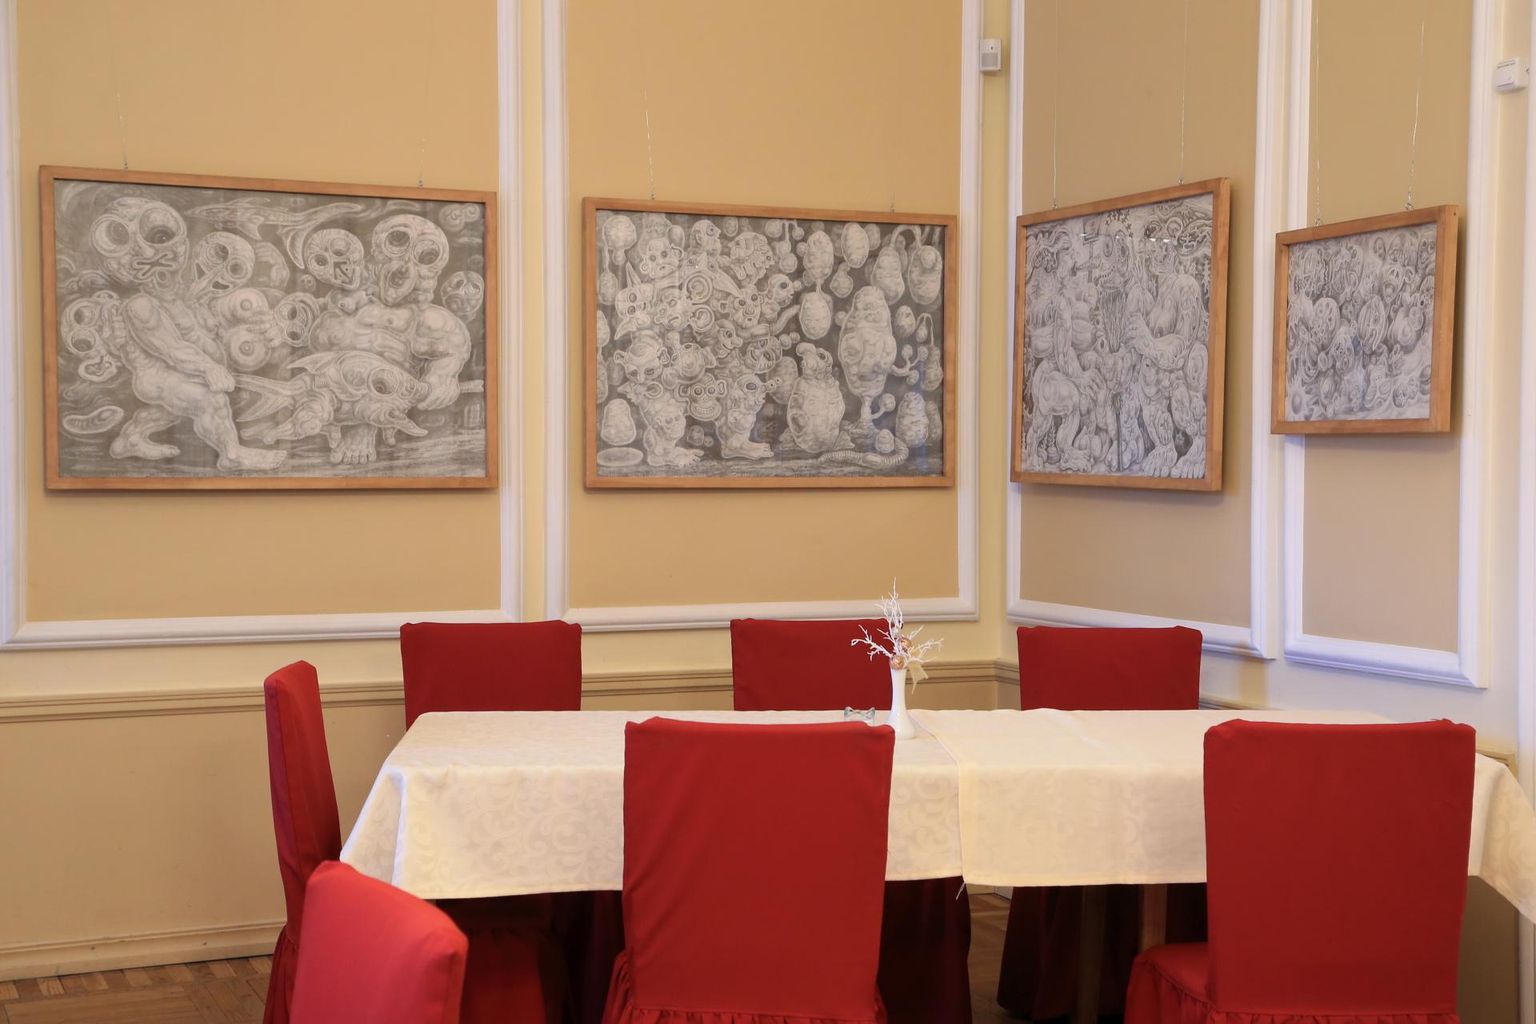 Ülikooli kohviku kaminasaalis on Albert Gulgi joonistuste näitus.